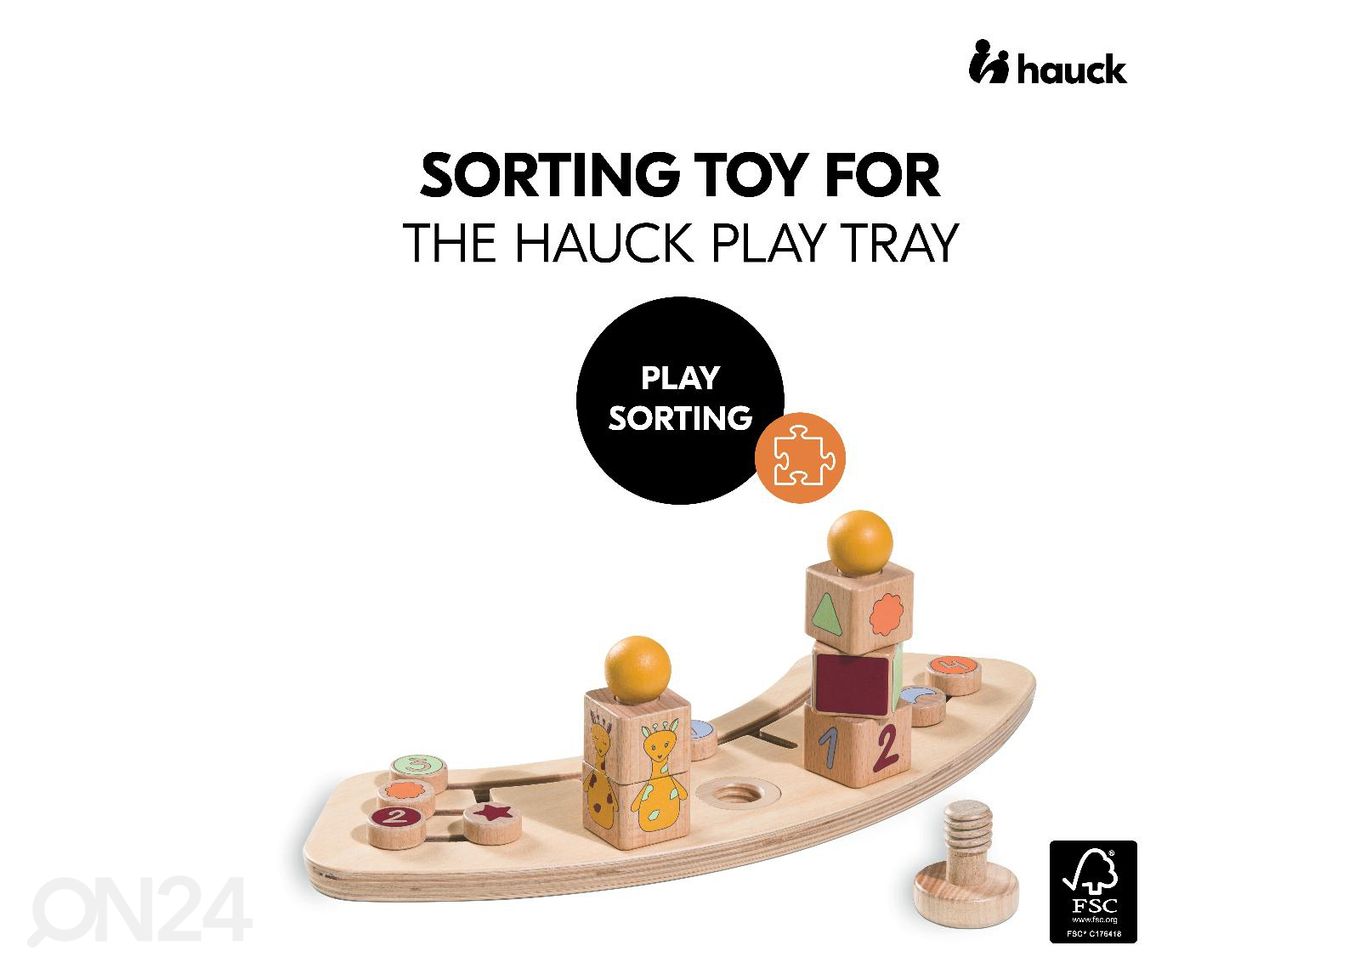 Mänguasi söötmistooli kandikule Hauck Play sorteerimismäng Kaelkirjak suurendatud